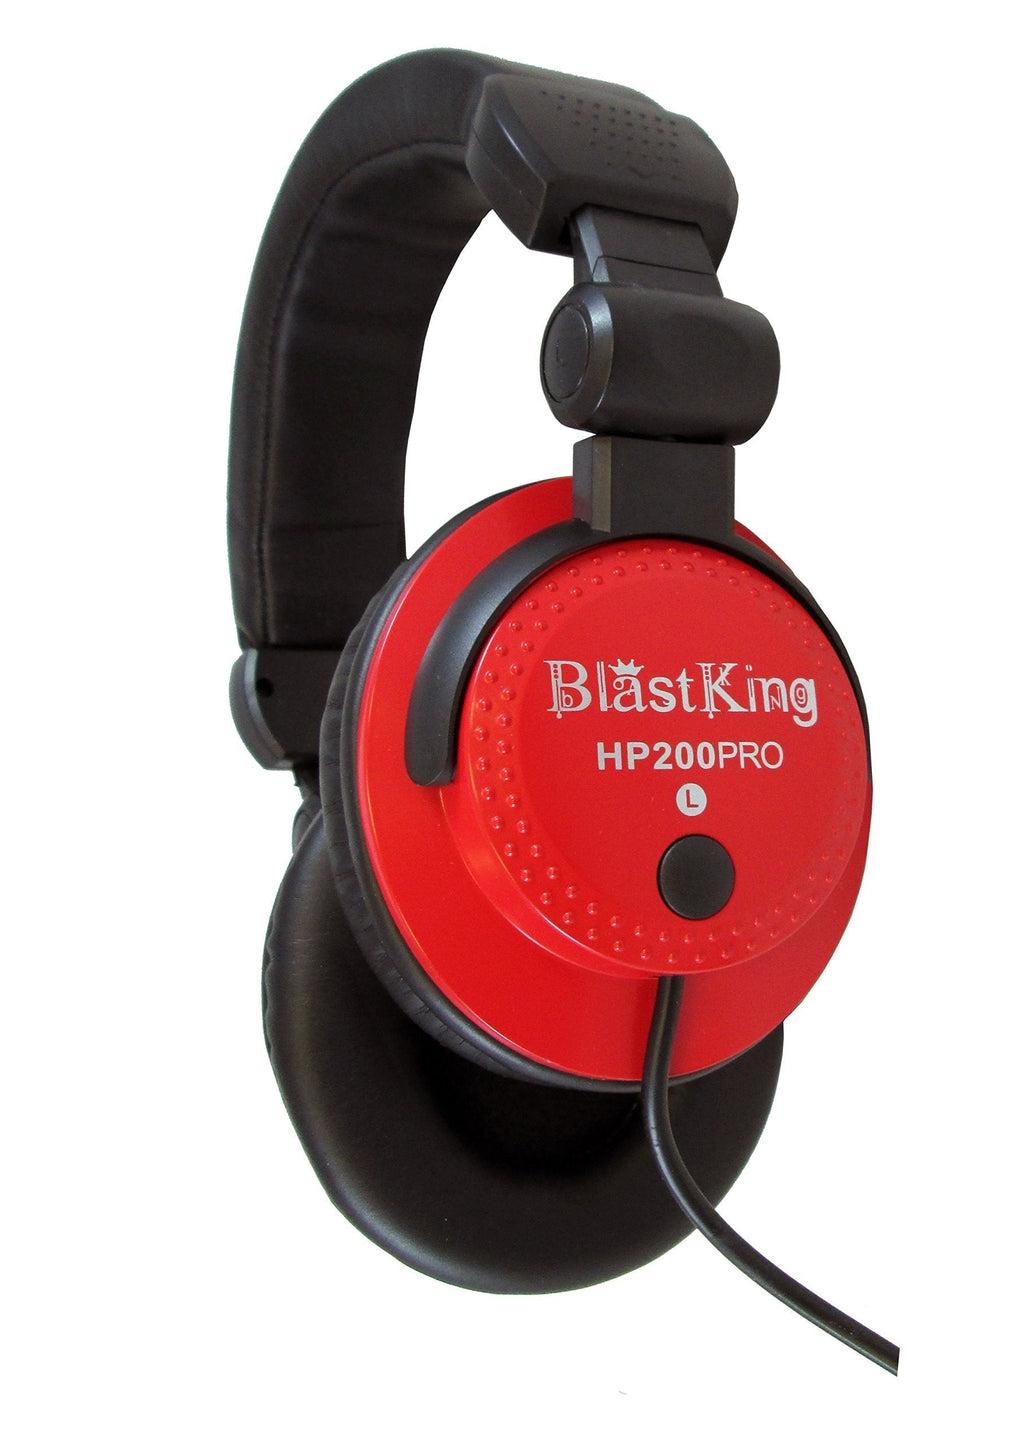 Blast King HP200PRO RD Professional DJ Headphones